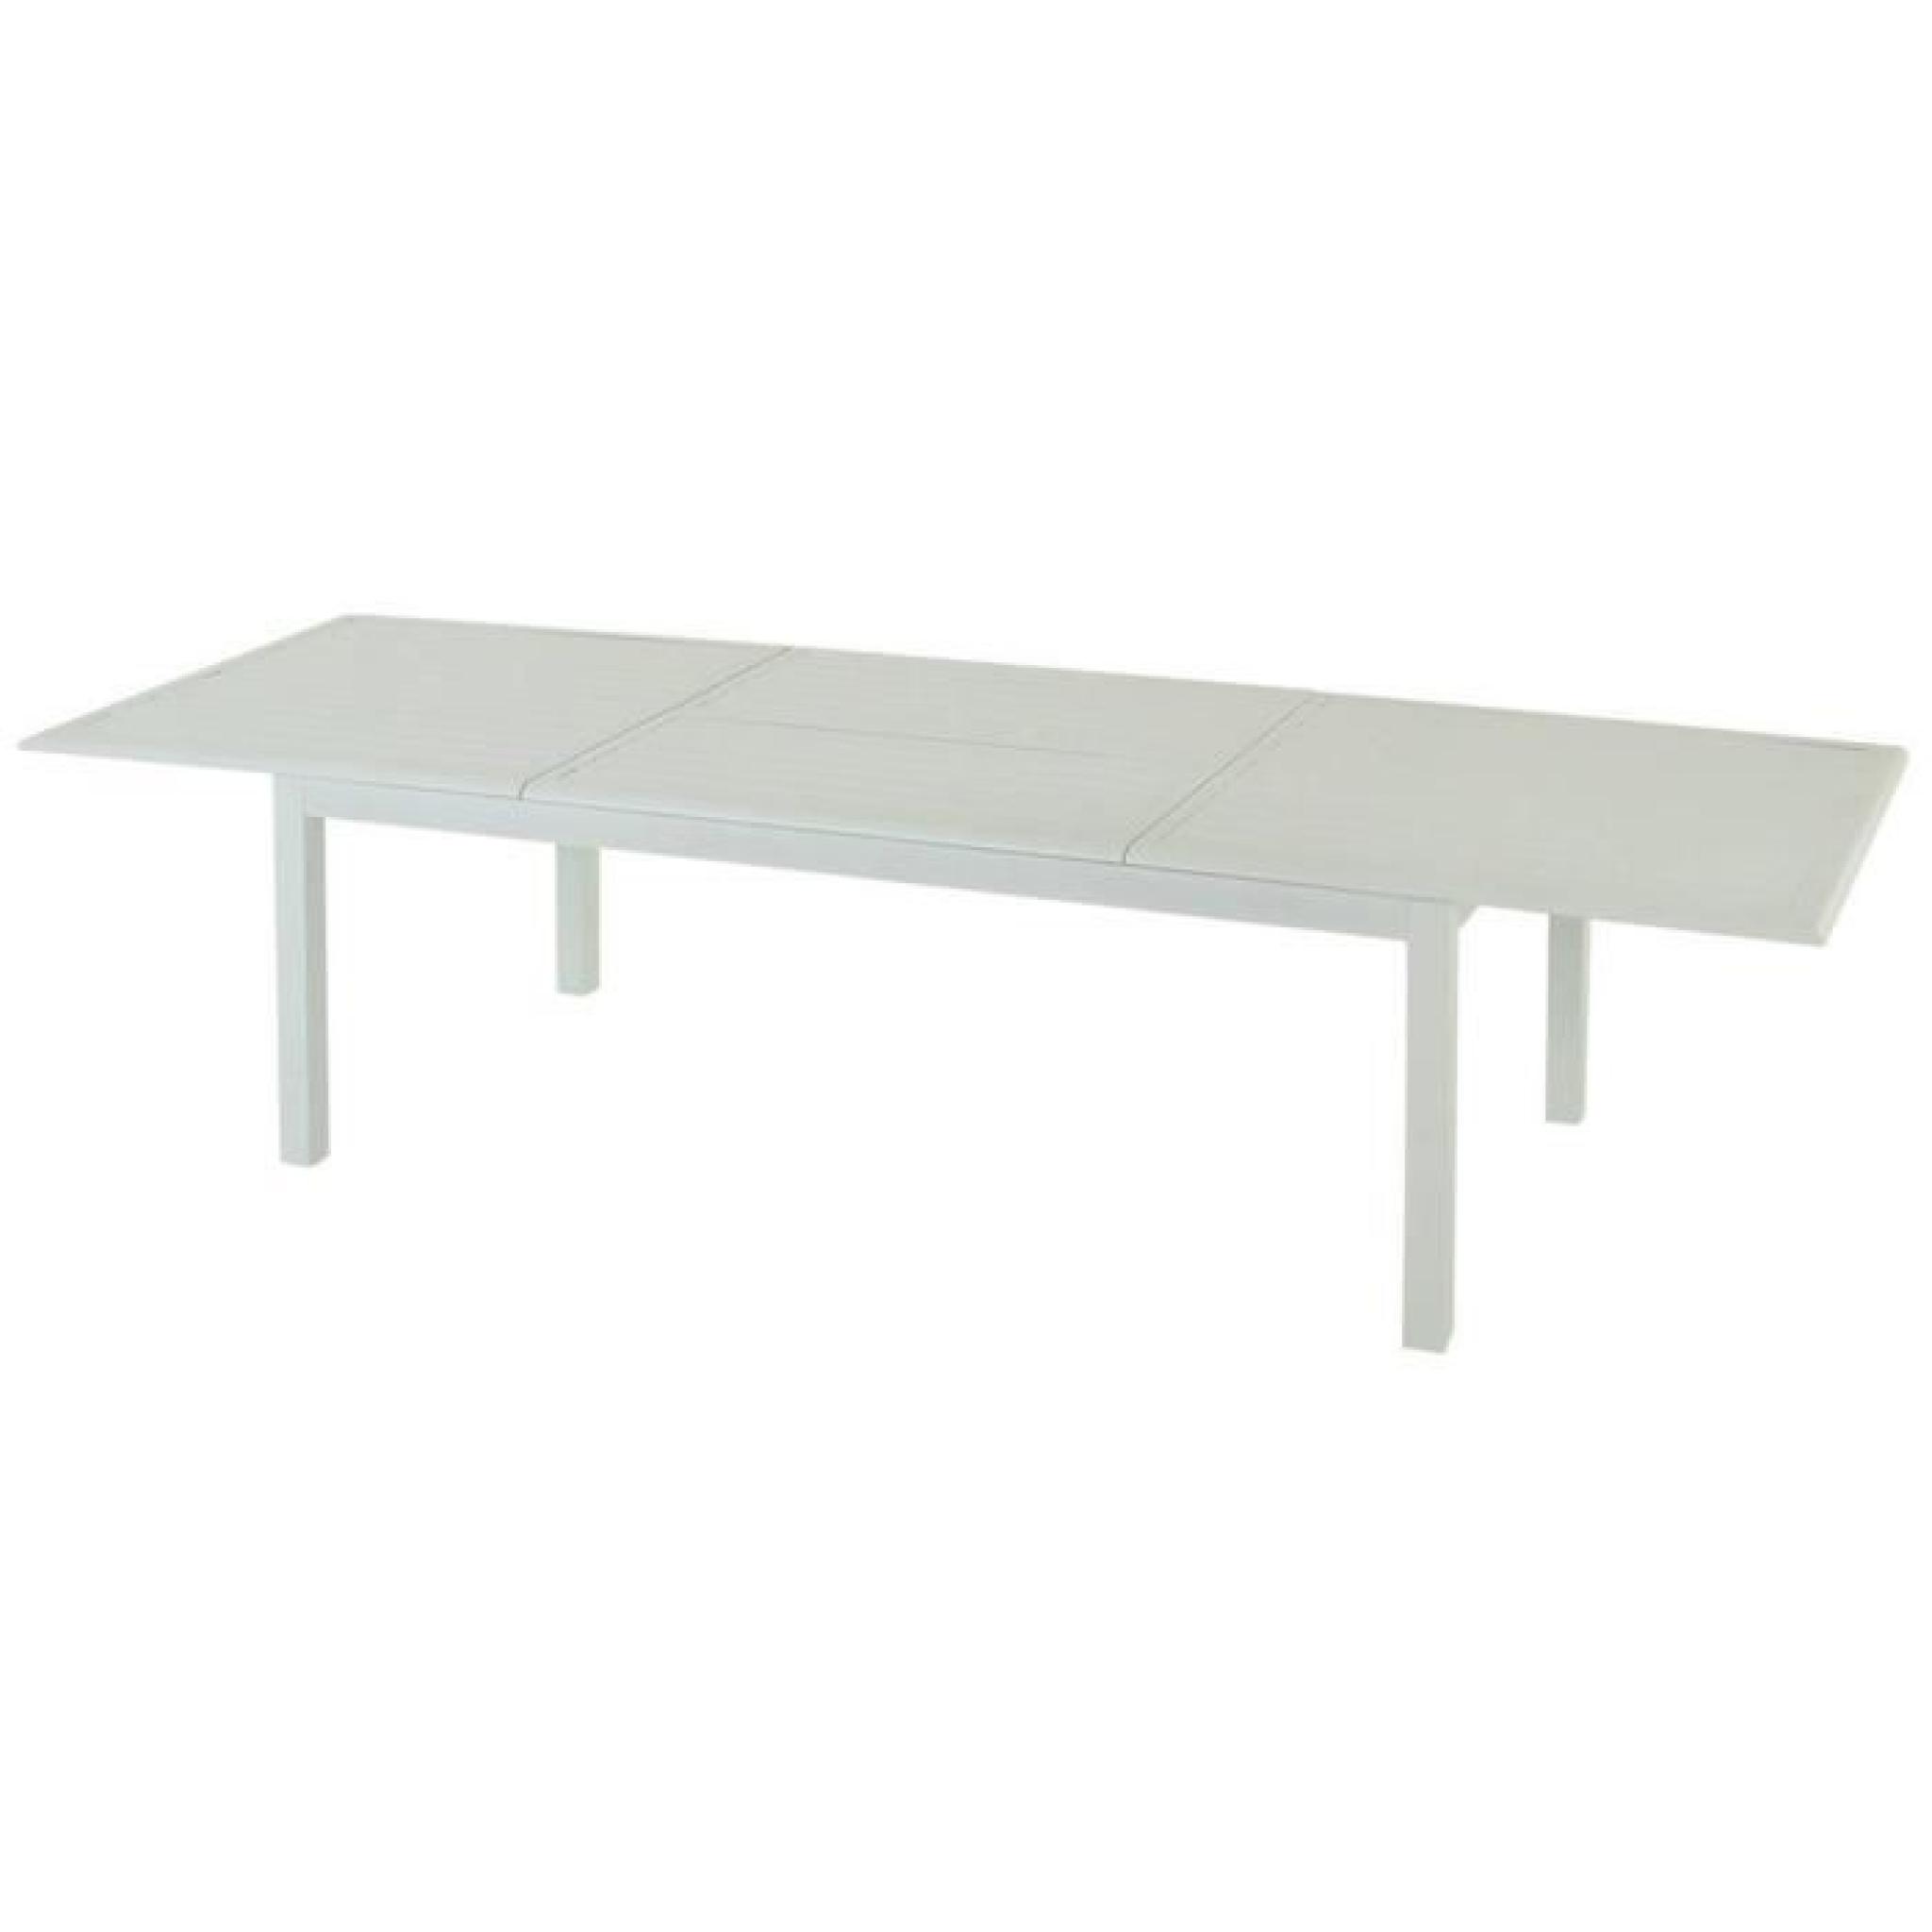 Table extensible en aluminium de couleur blanc - Dim : L 200/300 x P 100 x H 75 cm 